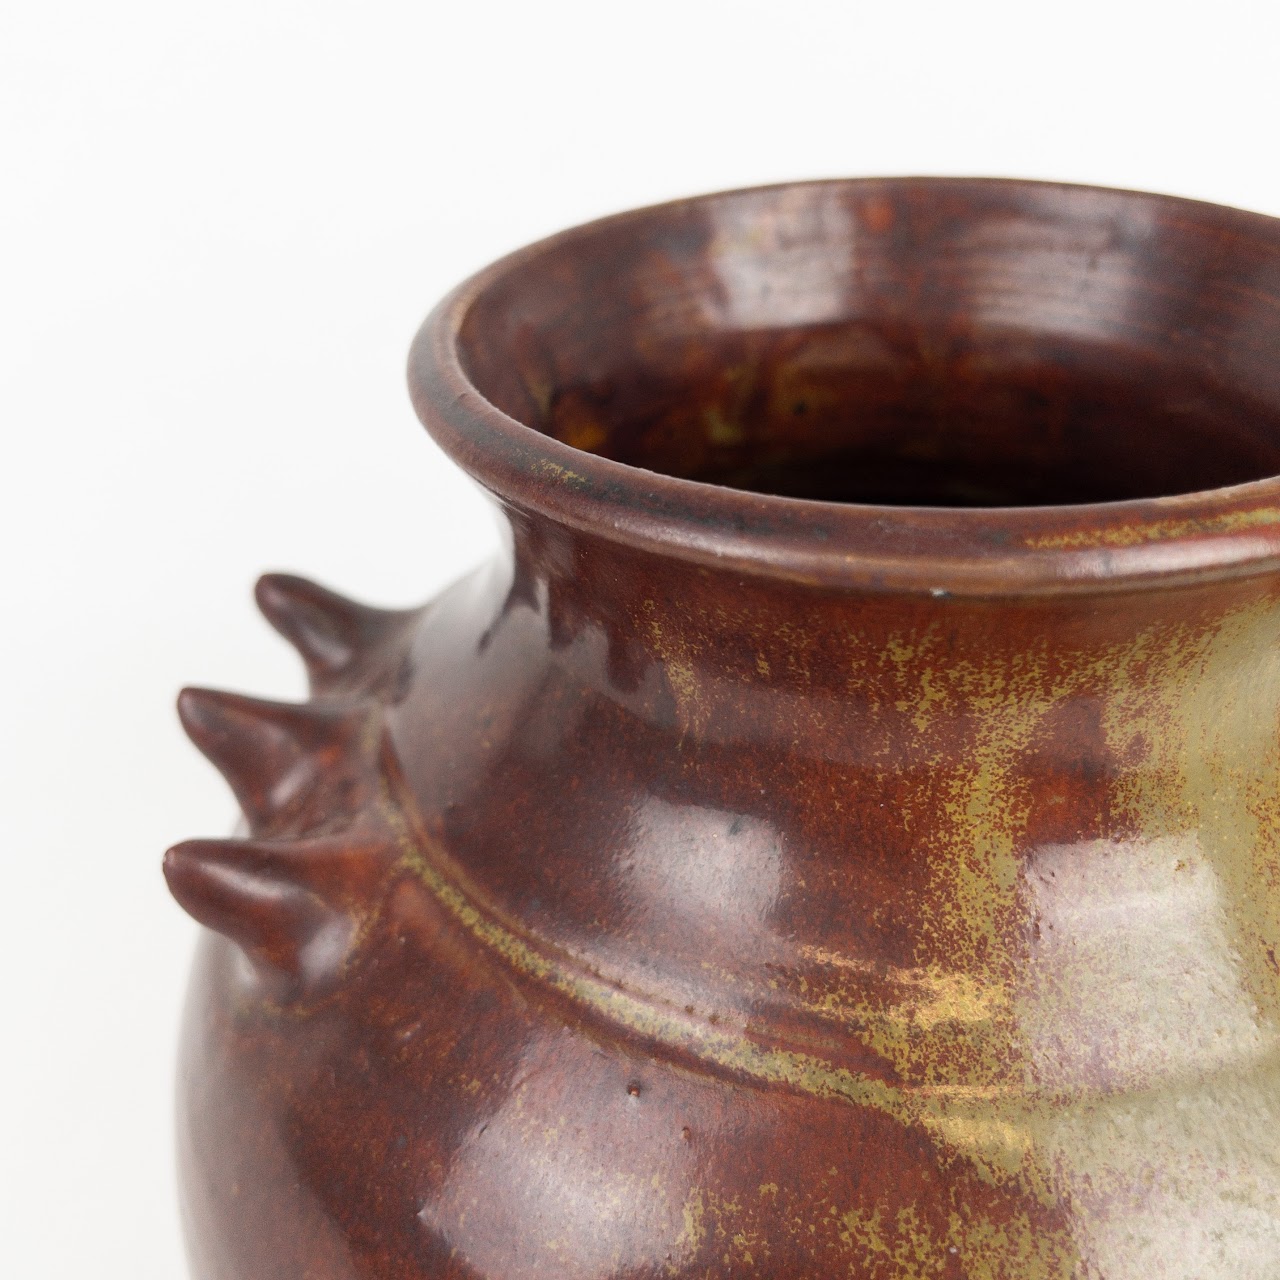 Signed Ceramic Spiked Vase